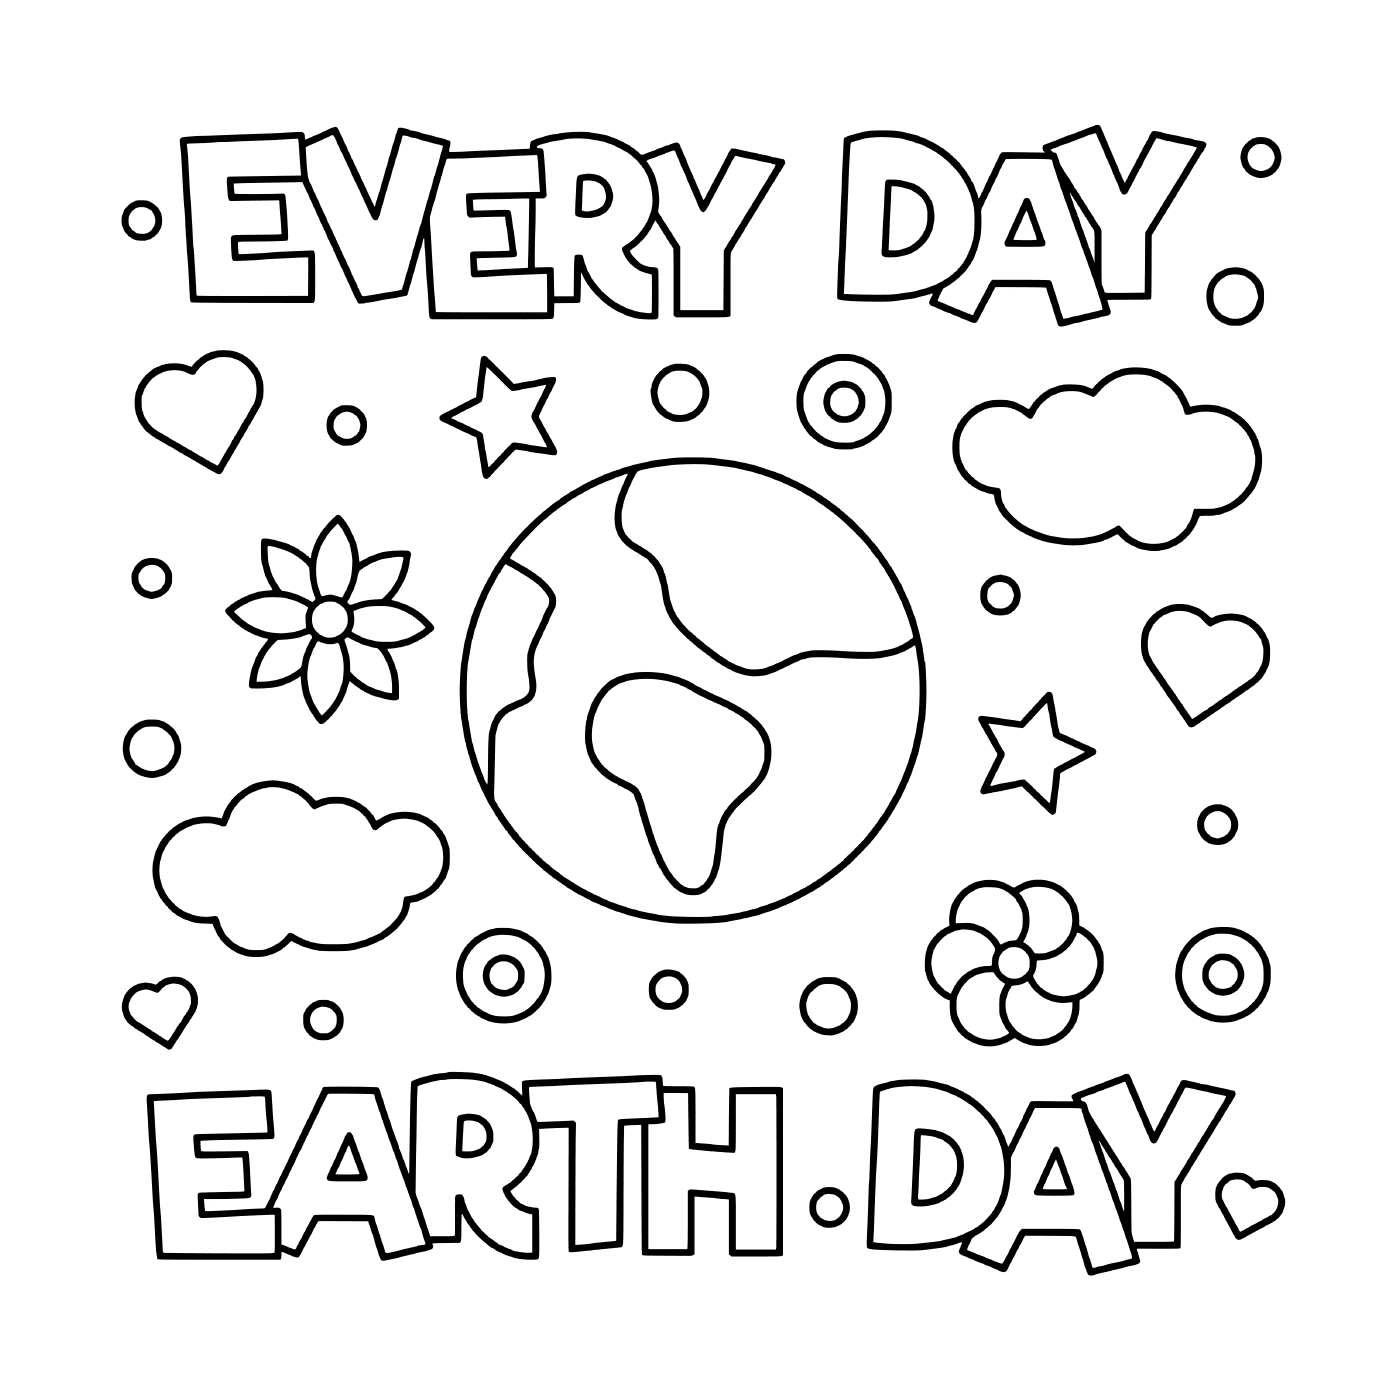  День Земли: каждый день 